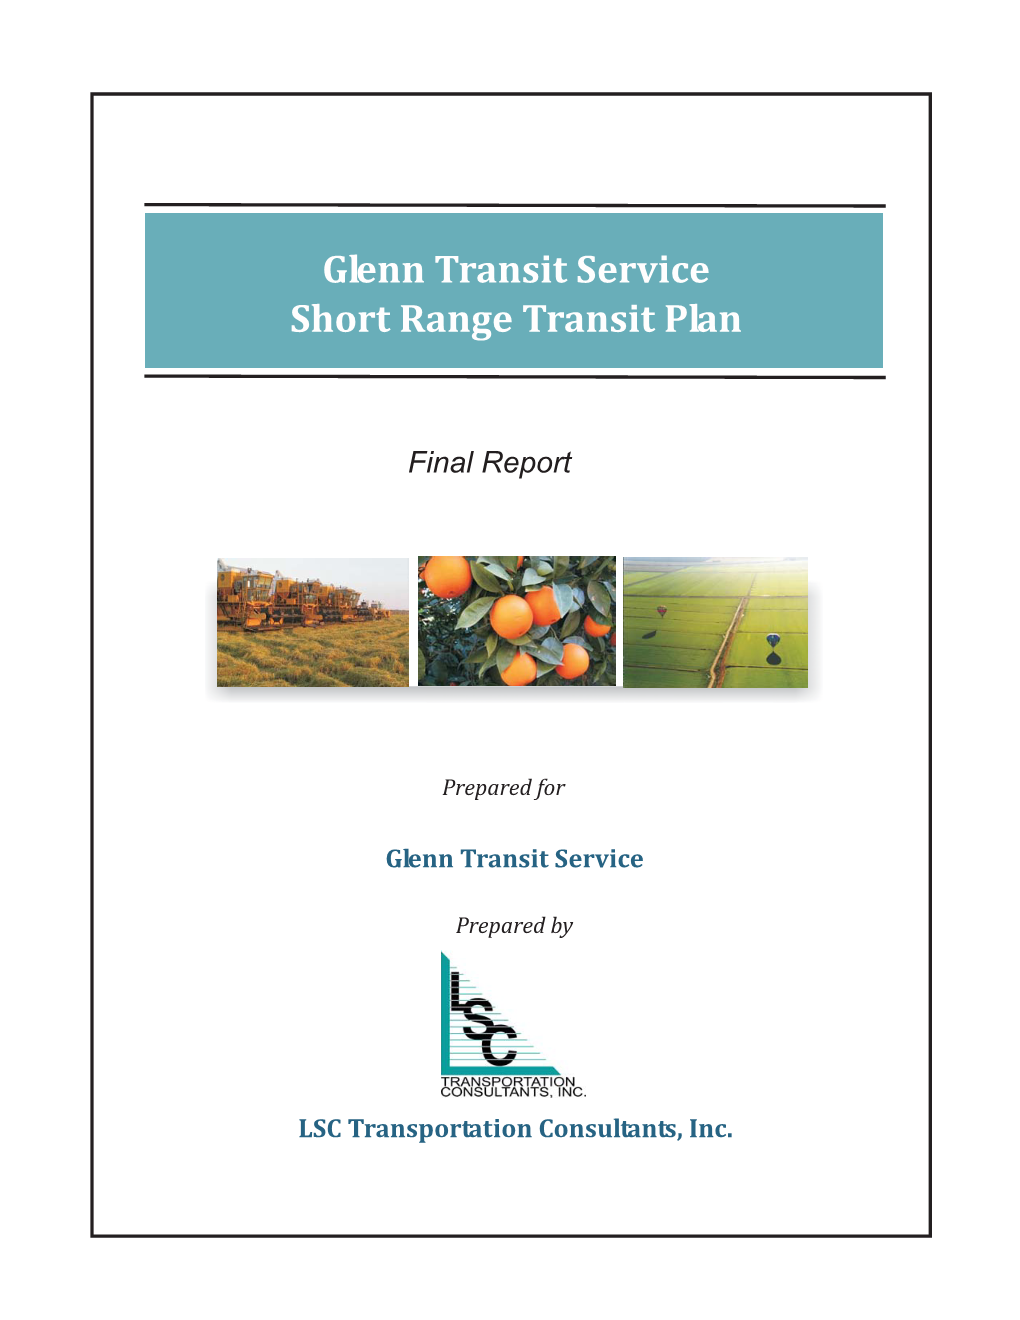 Glenn Transit Service Short Range Transit Plan